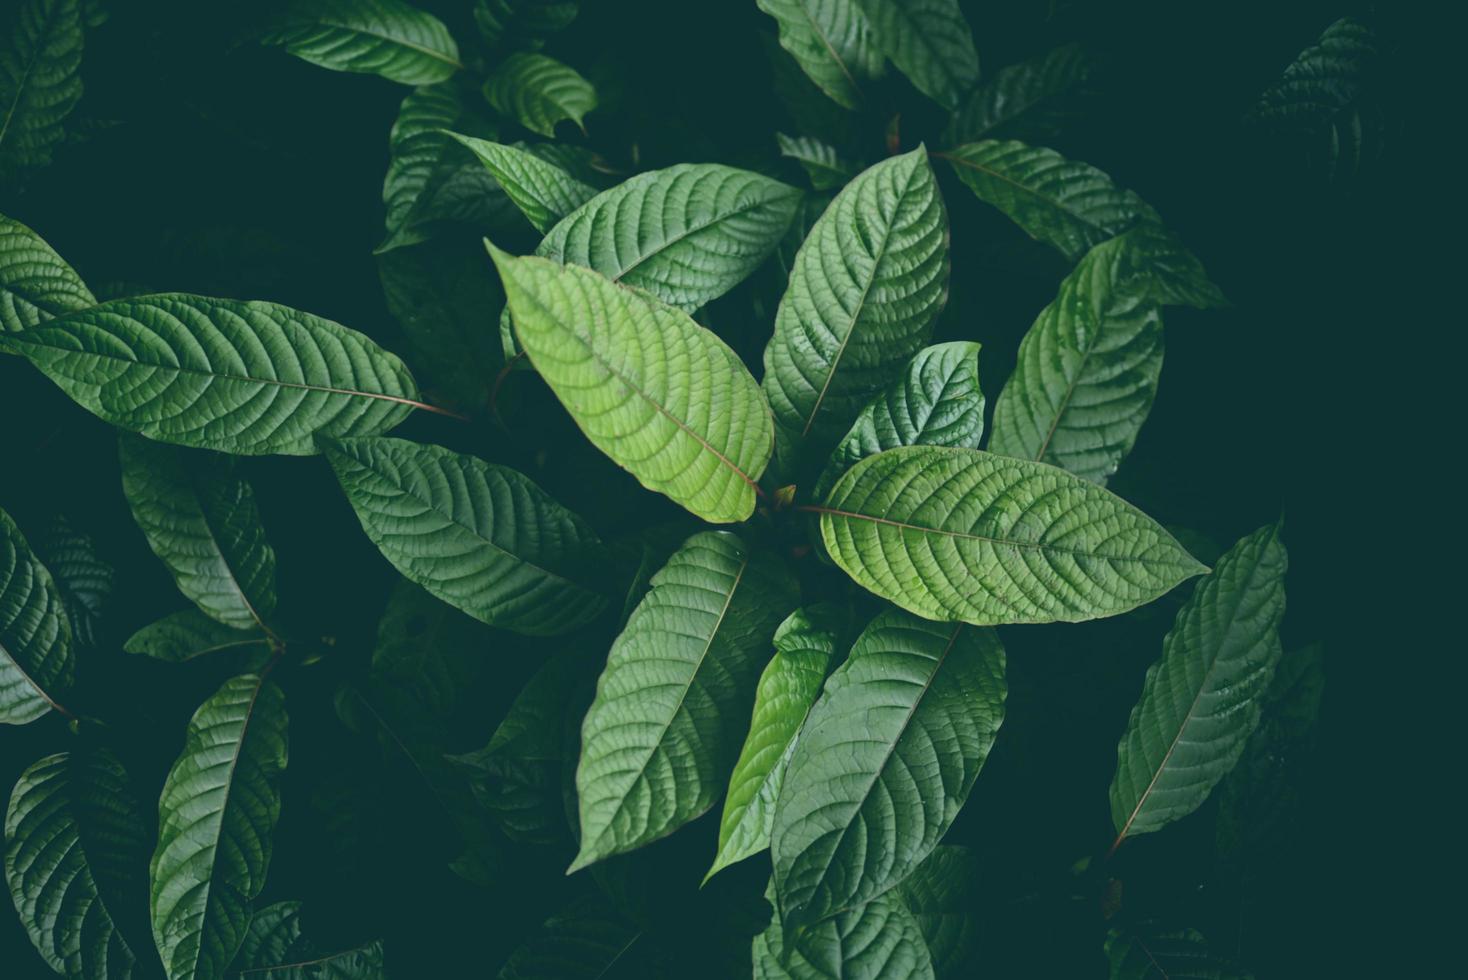 natura foglia verde sfondo, albero di kratom cresce su pianta scura albero foglie di kratom - mitragyna speciosa korth piante medicinali foto